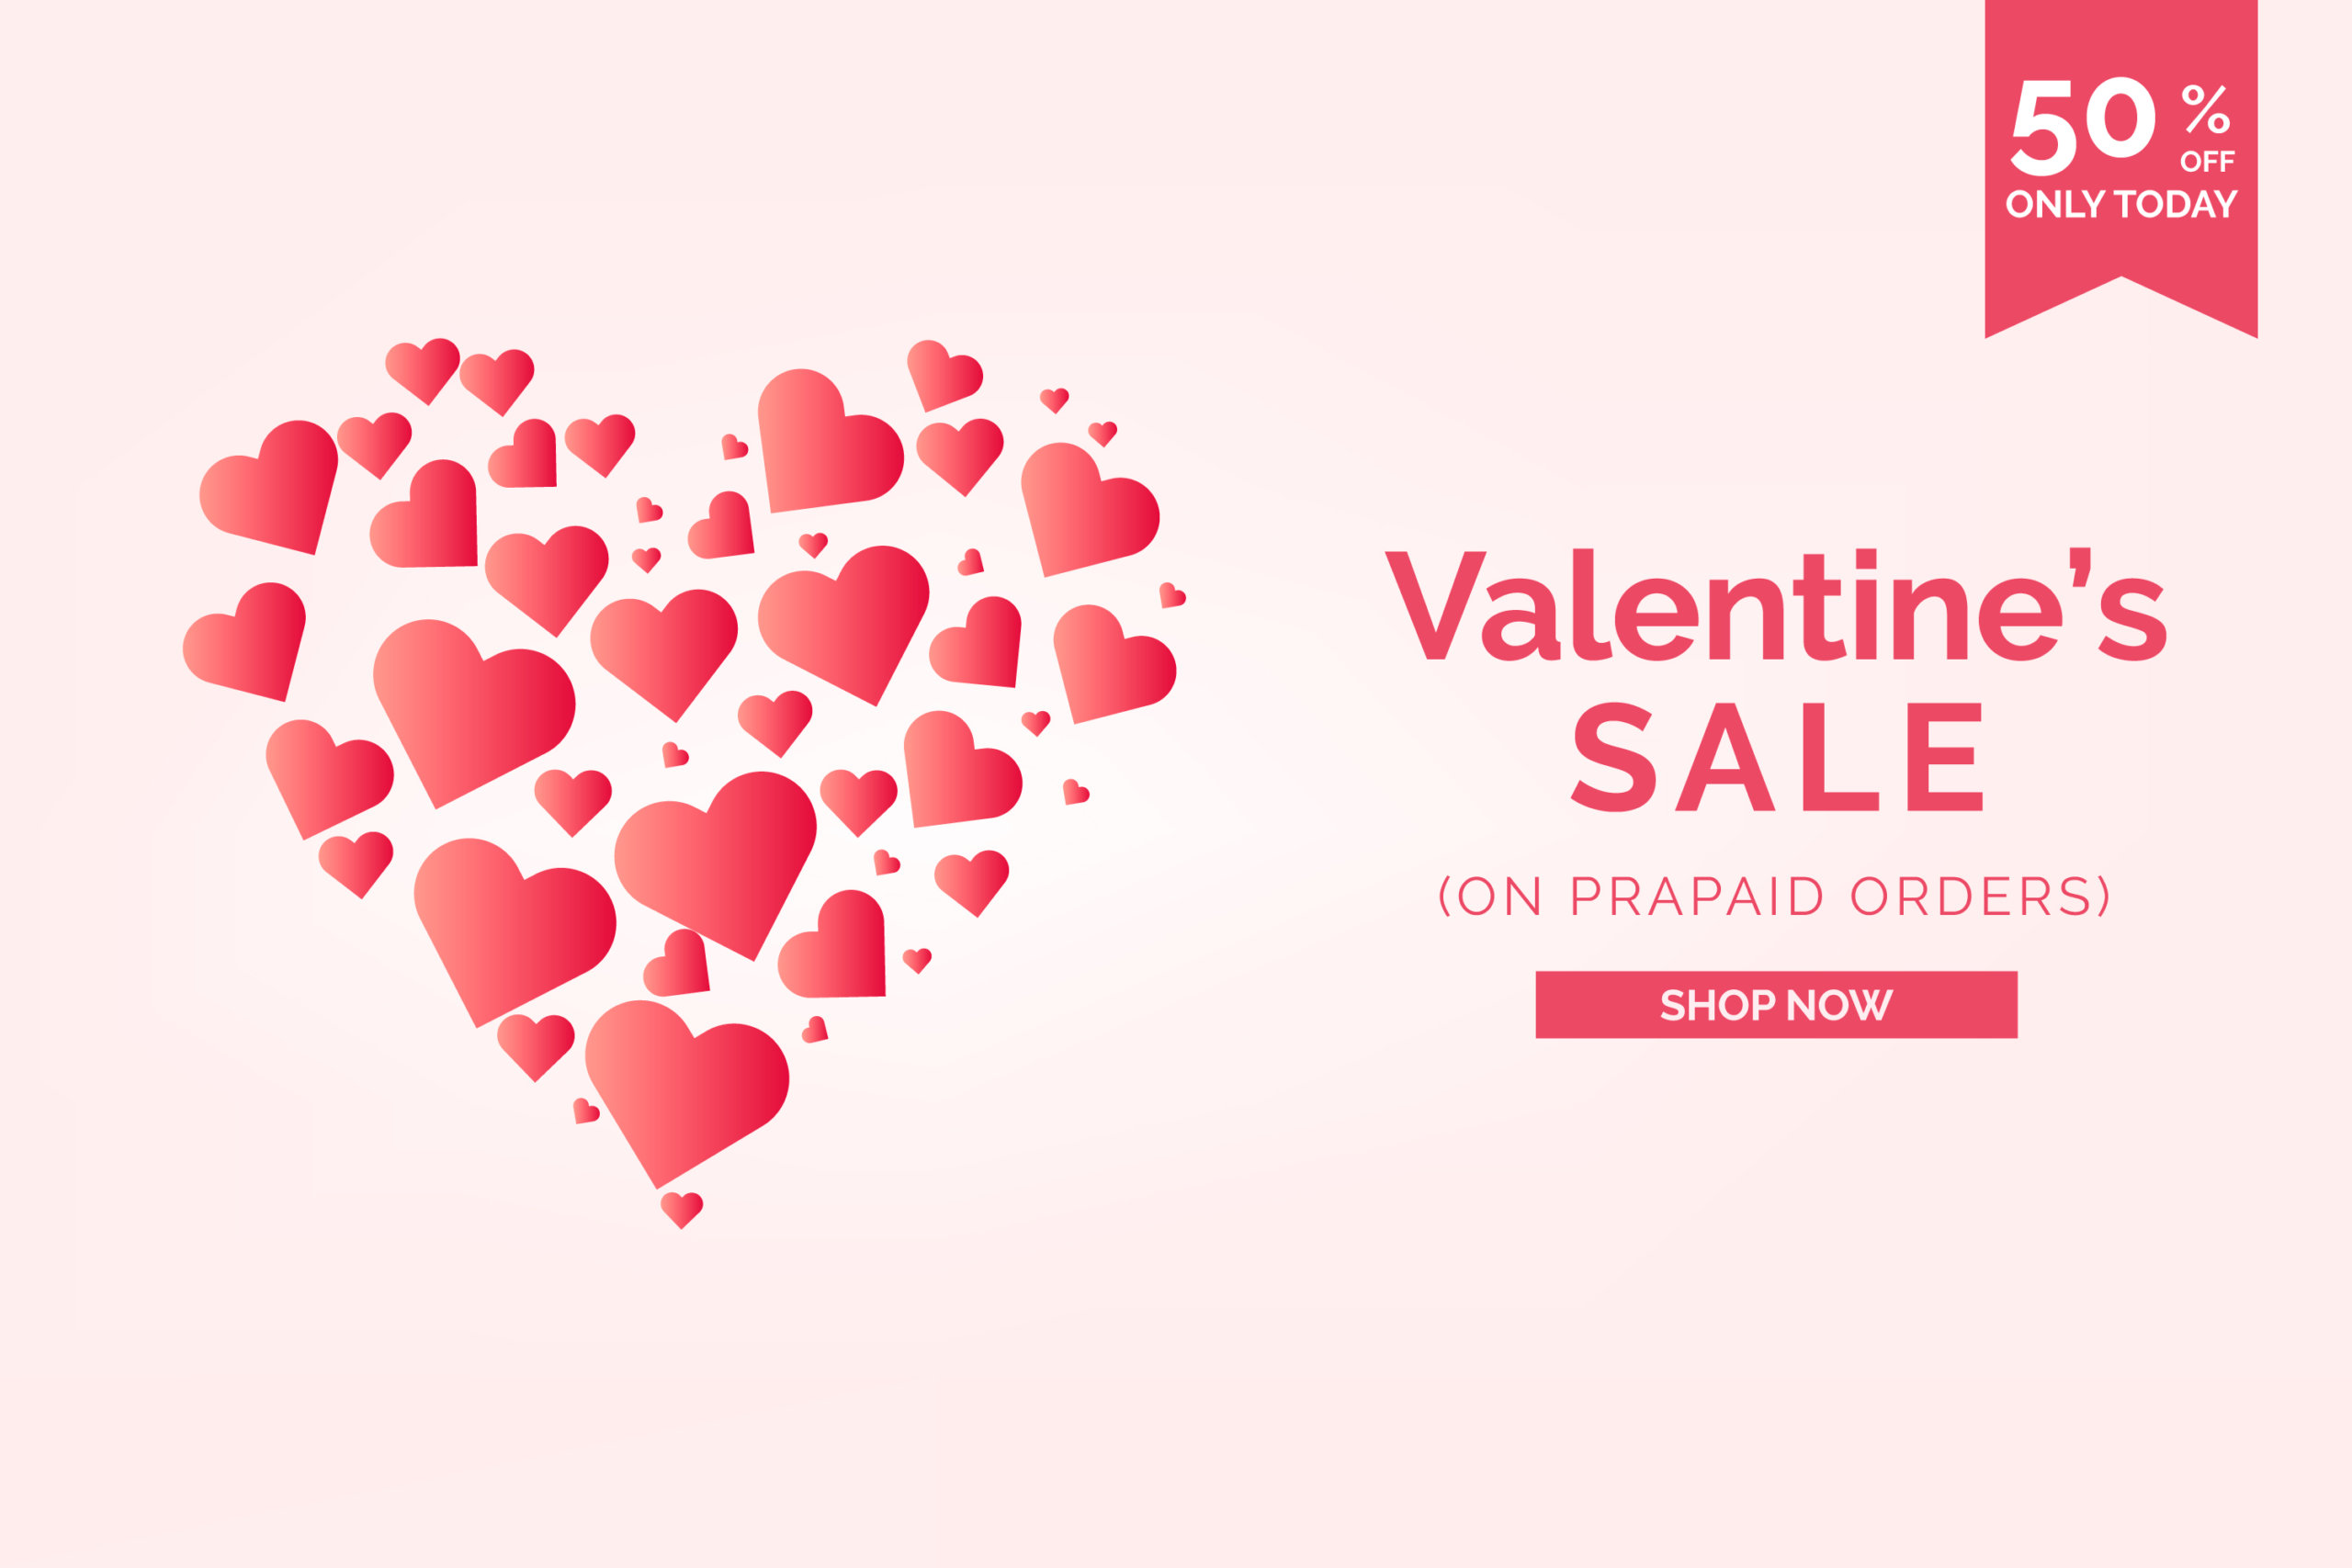 16款情人节七夕主题爱心心形宣传海报设计ai矢量素材 valentines day